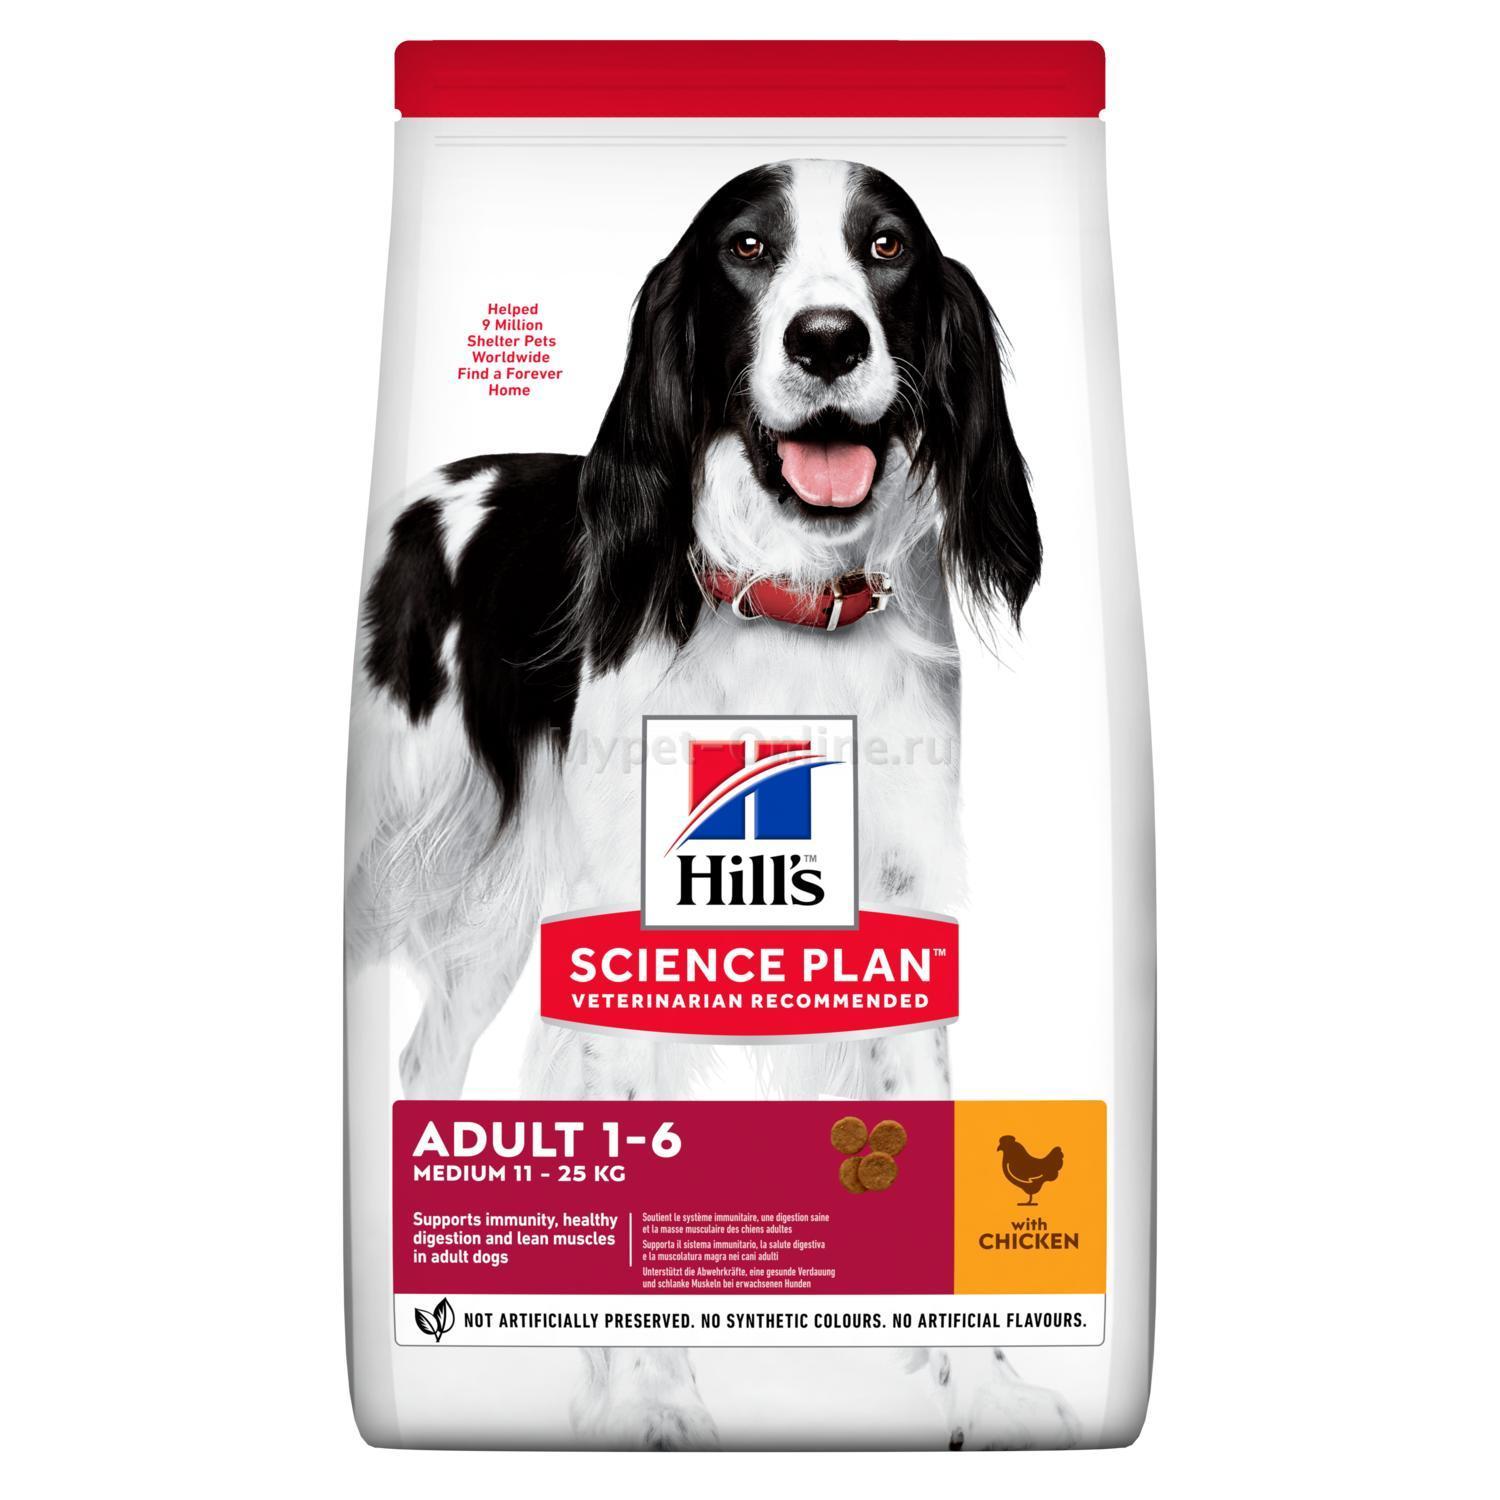 Купить сухой корм для собак хиллс. Хиллс для собак средних пород 12 кг ягненок рис. Корм Хиллс для собак средних пород с ягненком и рисом. Хиллс для собак средних пород ягненок рис. Хиллс ягненок рис для собак.